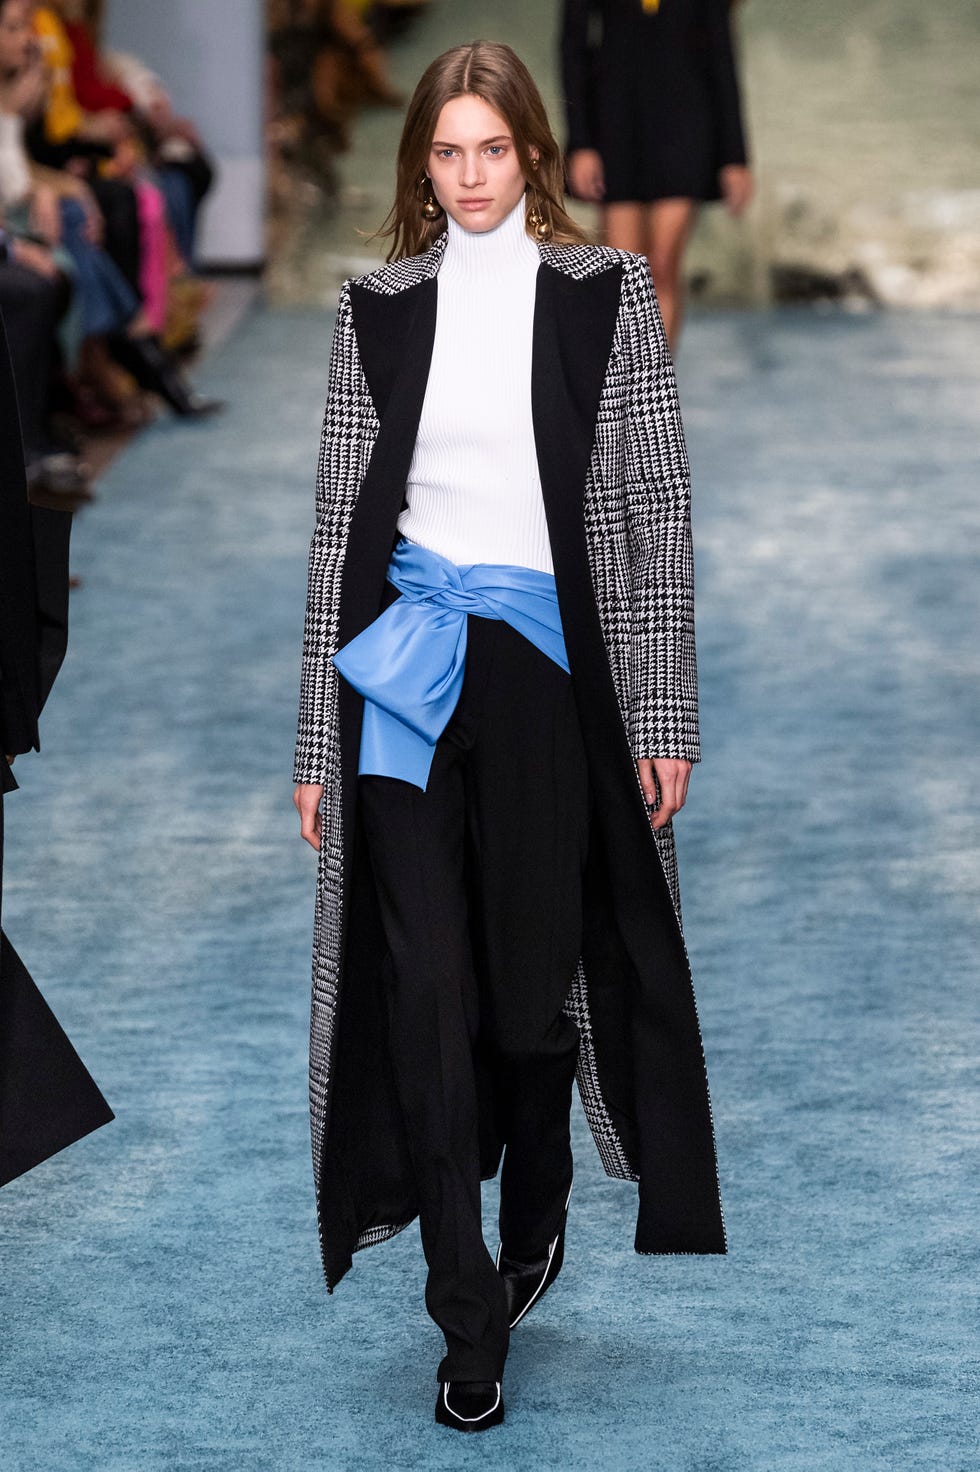 Cappotti moda Inverno 2019 2020: giacche lunghe e oversize è la tendenza  dalle sfilate